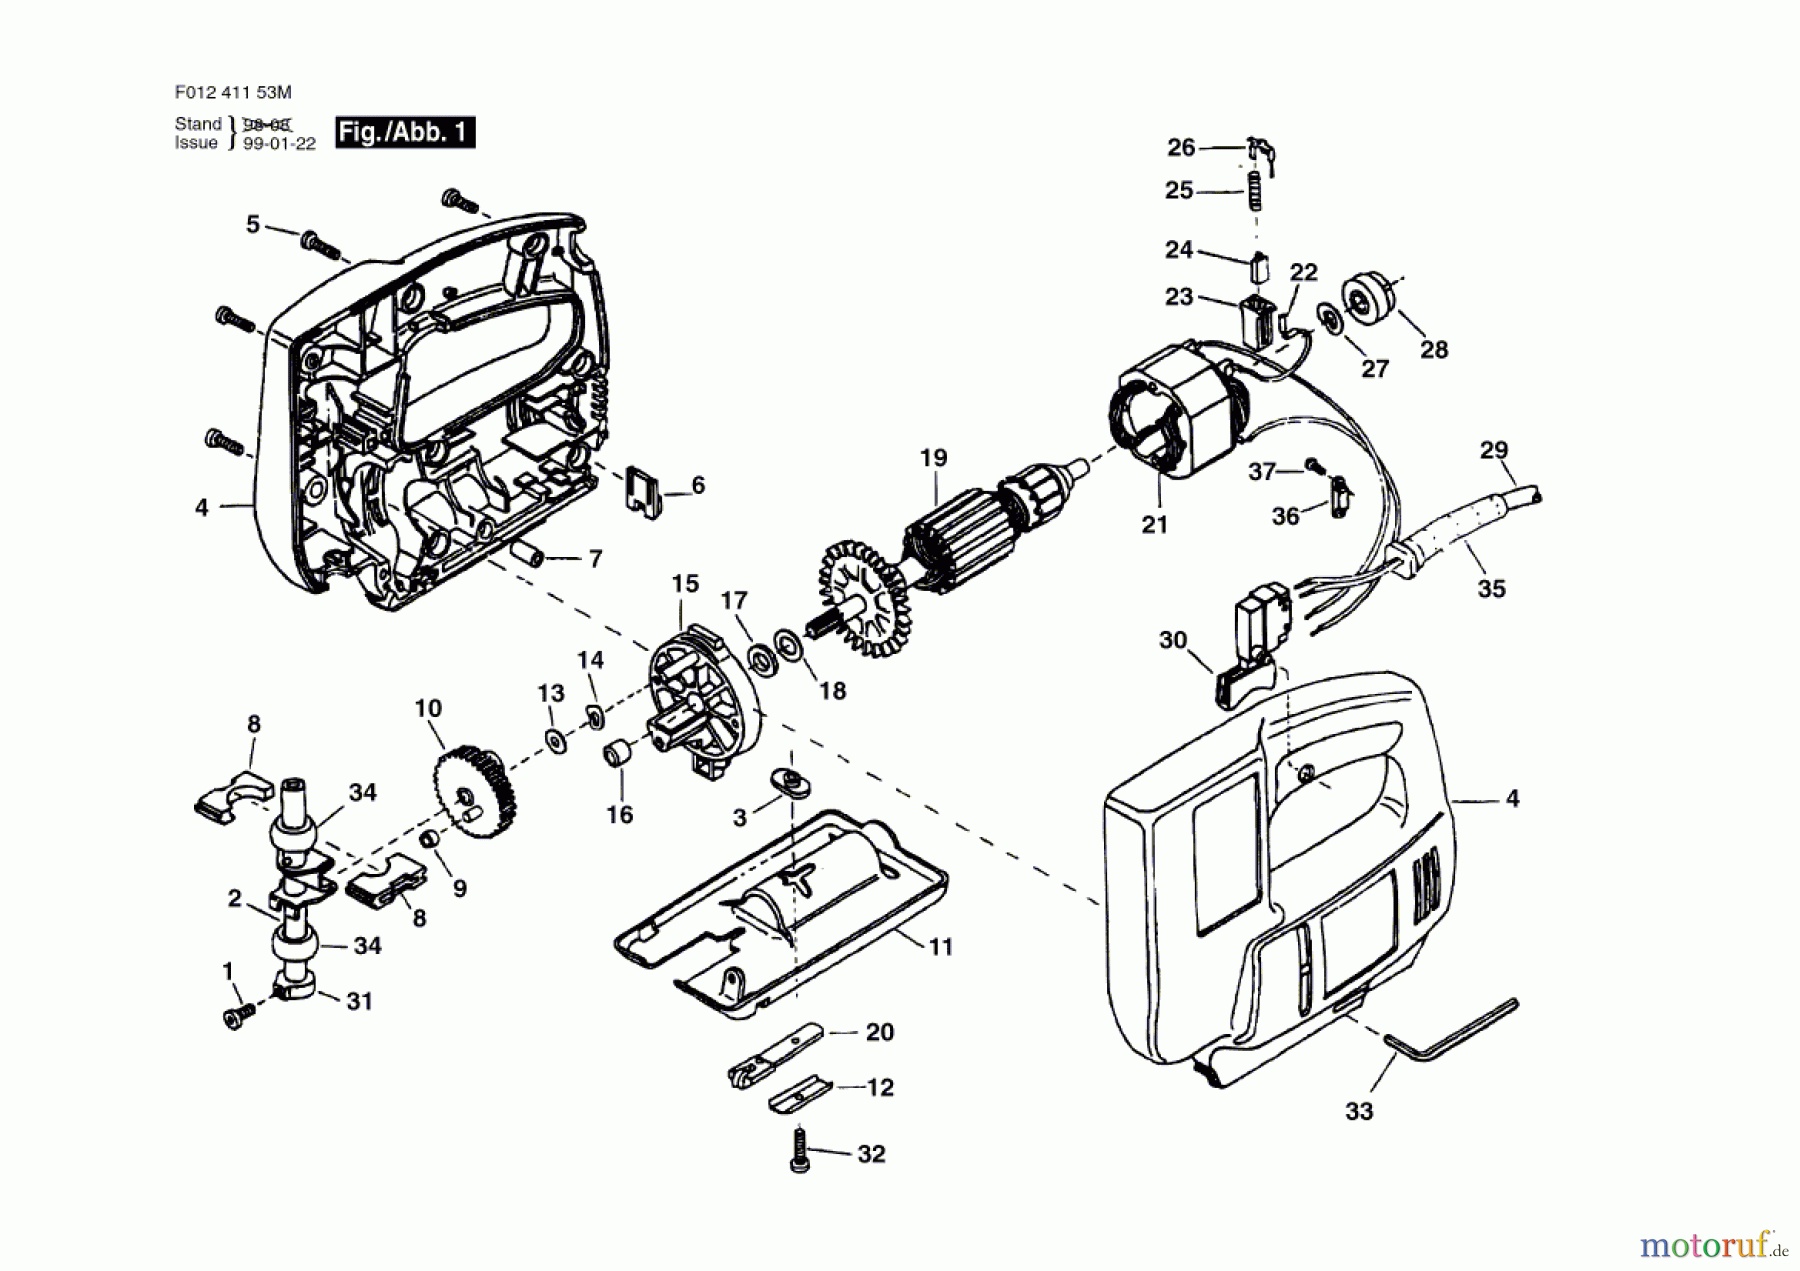  Bosch Werkzeug Stichsäge 4115-80 Seite 1